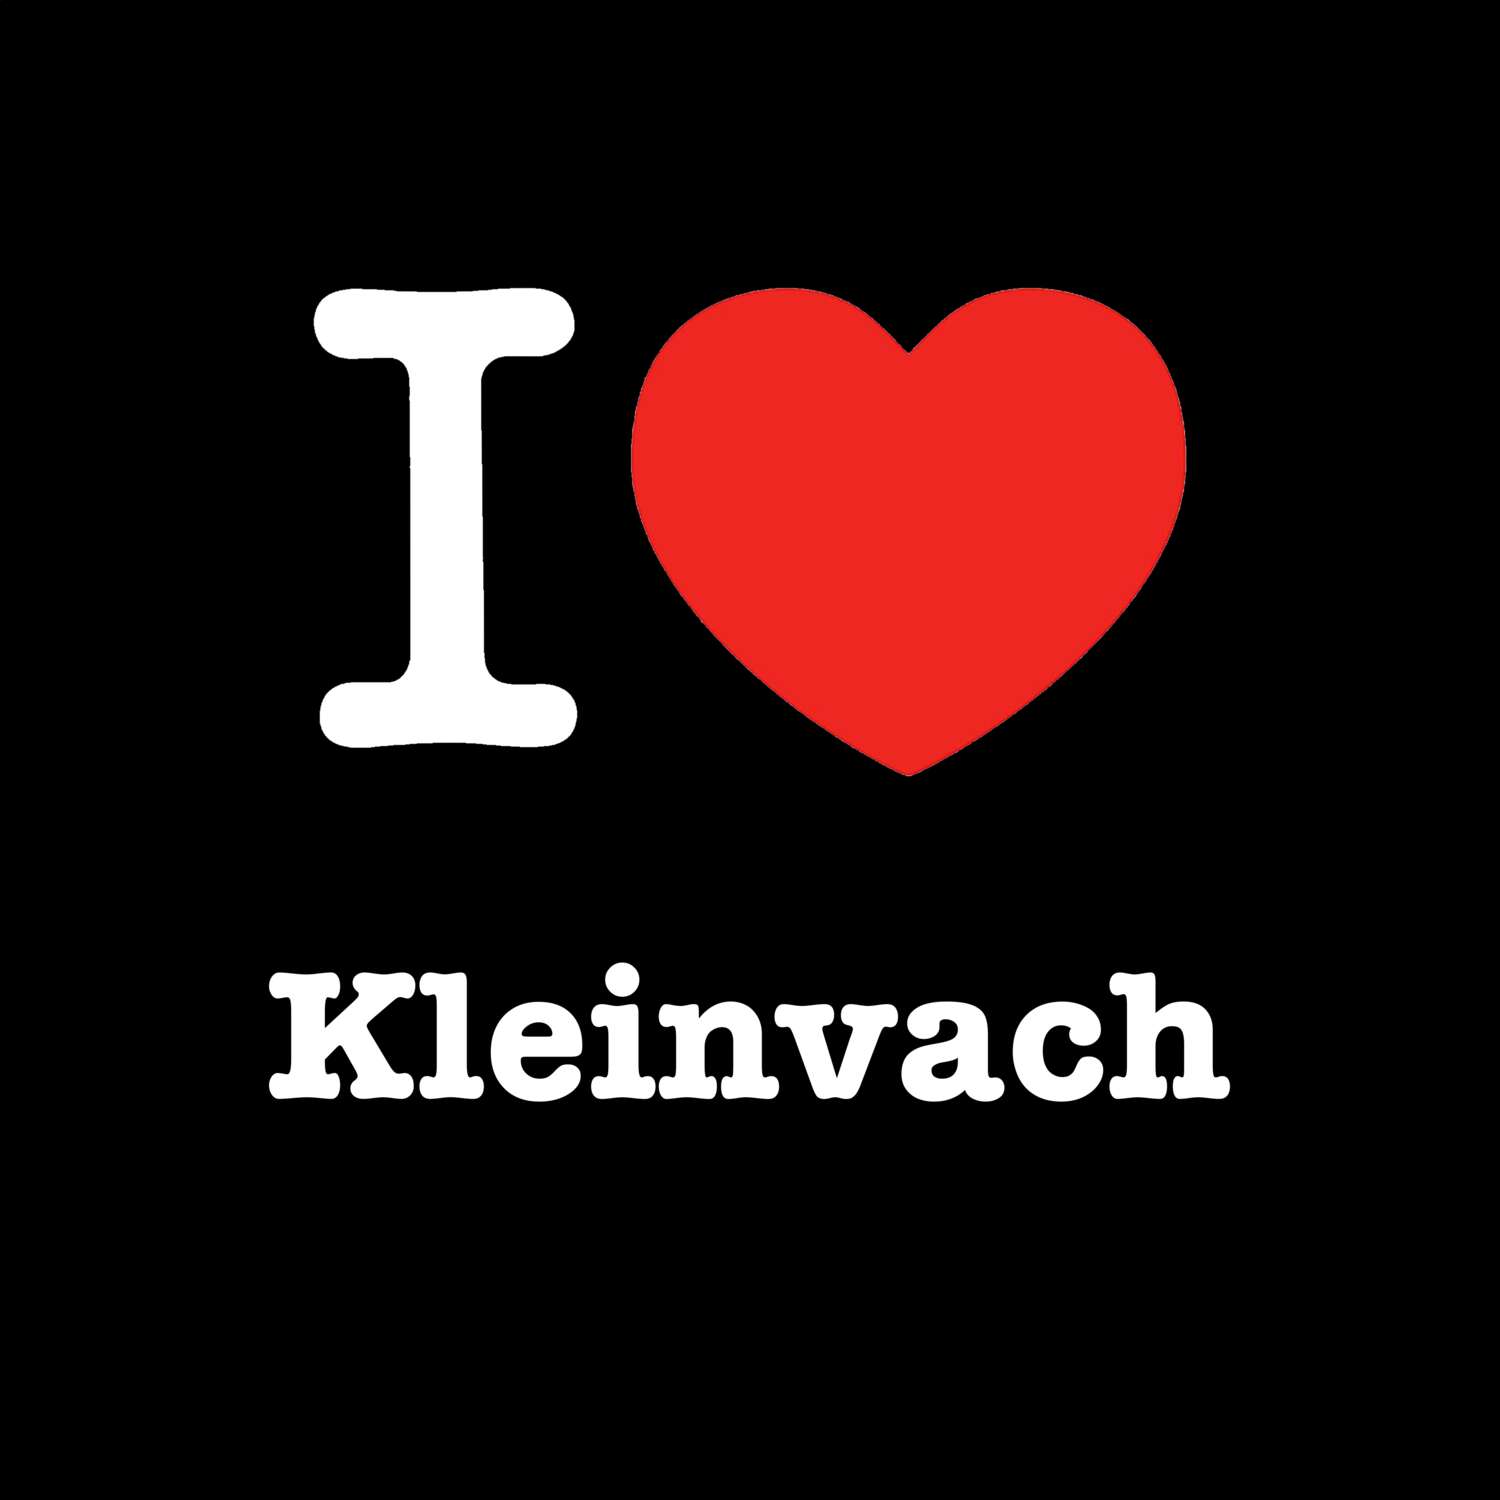 Kleinvach T-Shirt »I love«